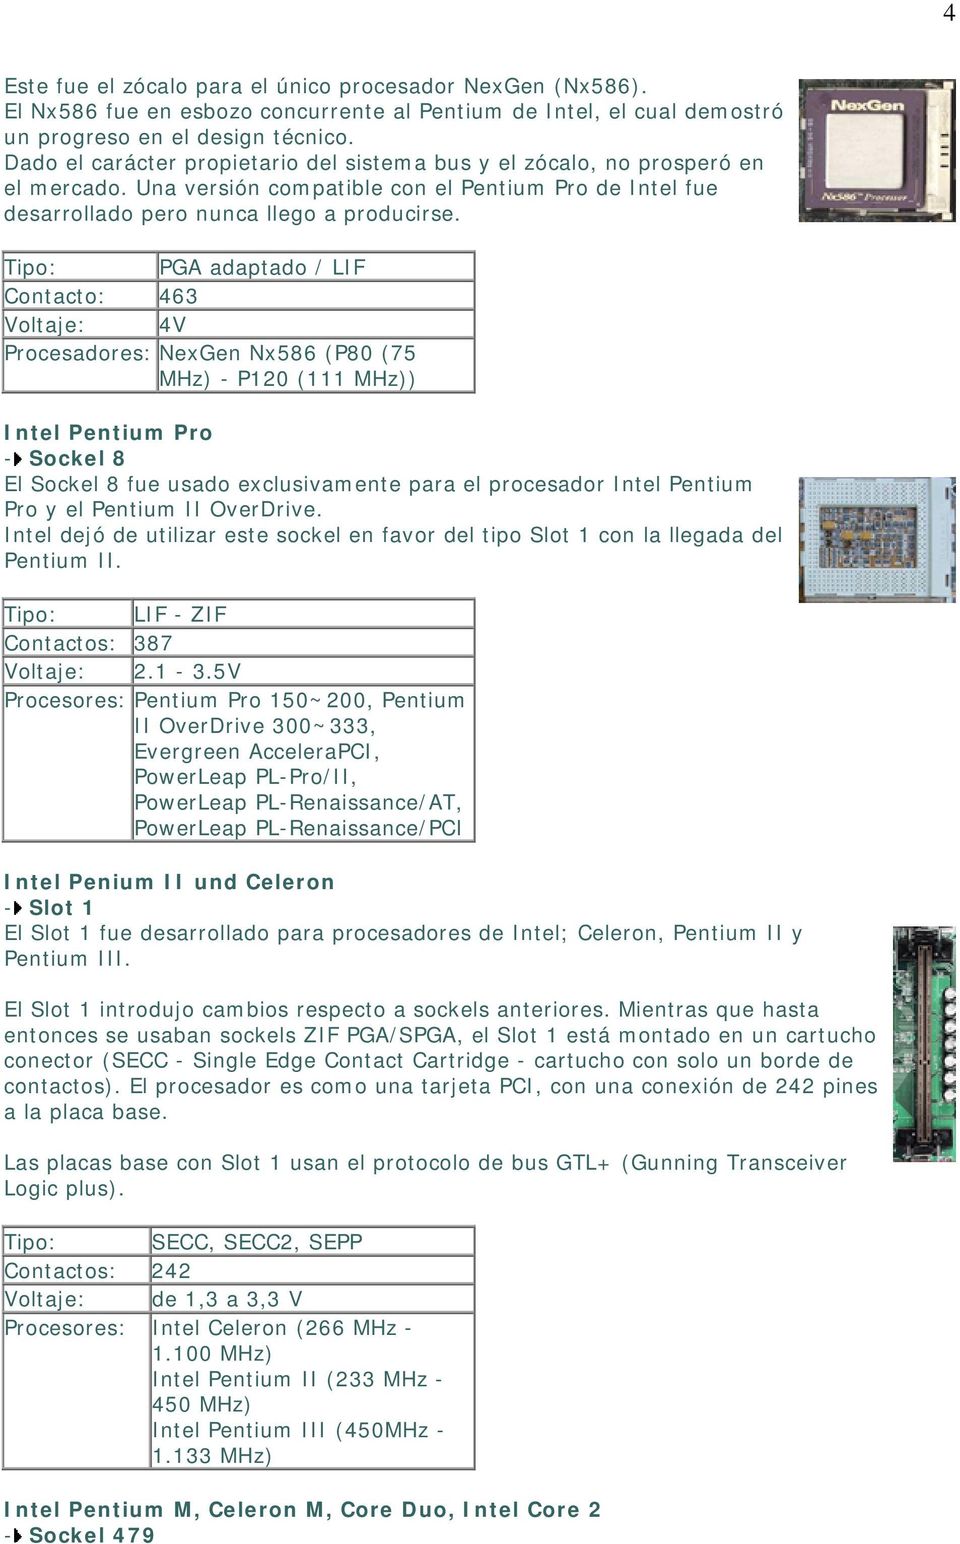 Tipo: PGA adaptado / LIF Contacto: 463 Voltaje: 4V Procesadores: NexGen Nx586 (P80 (75 - P120 (111 ) Intel Pentium Pro - Sockel 8 El Sockel 8 fue usado exclusivamente para el procesador Intel Pentium